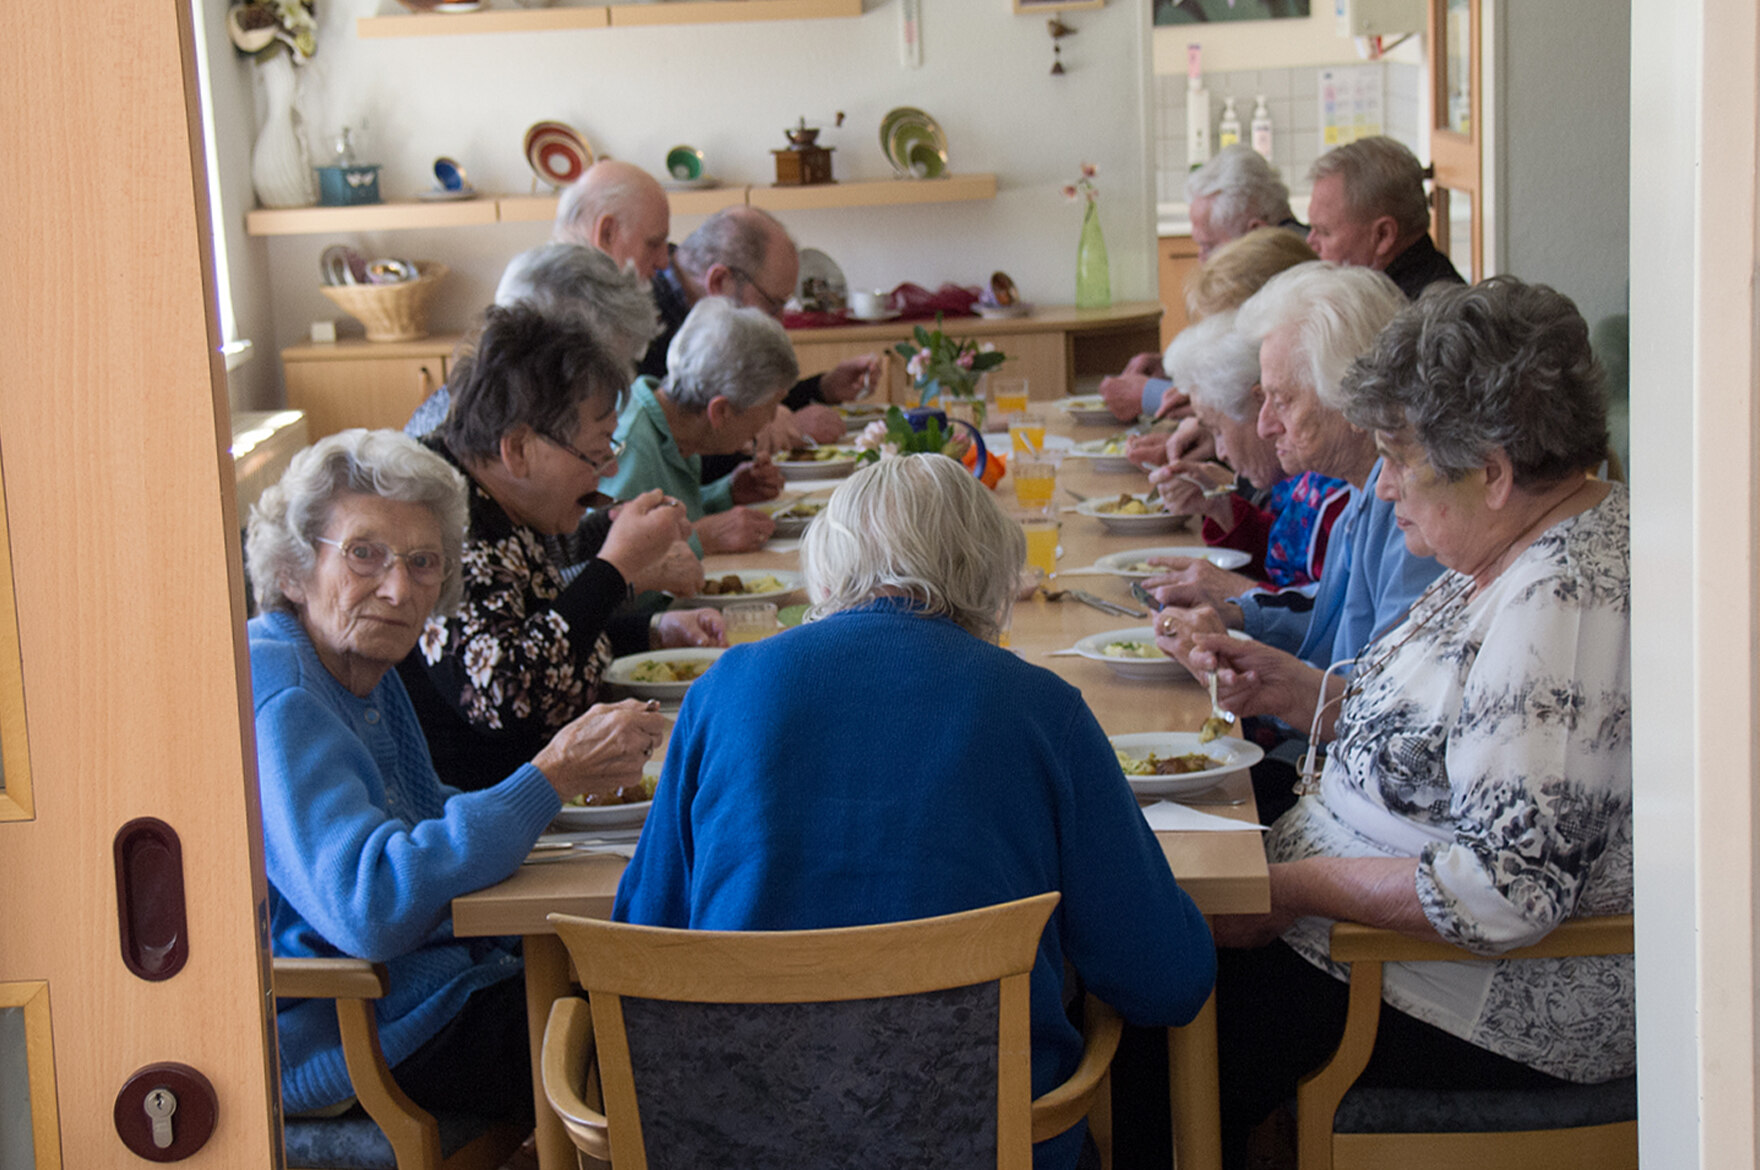 13 ältere Menschen essen gemeinsam an einem langen Tisch zum Mittag. Fotografiert wurde durch eine offene Schiebetür.